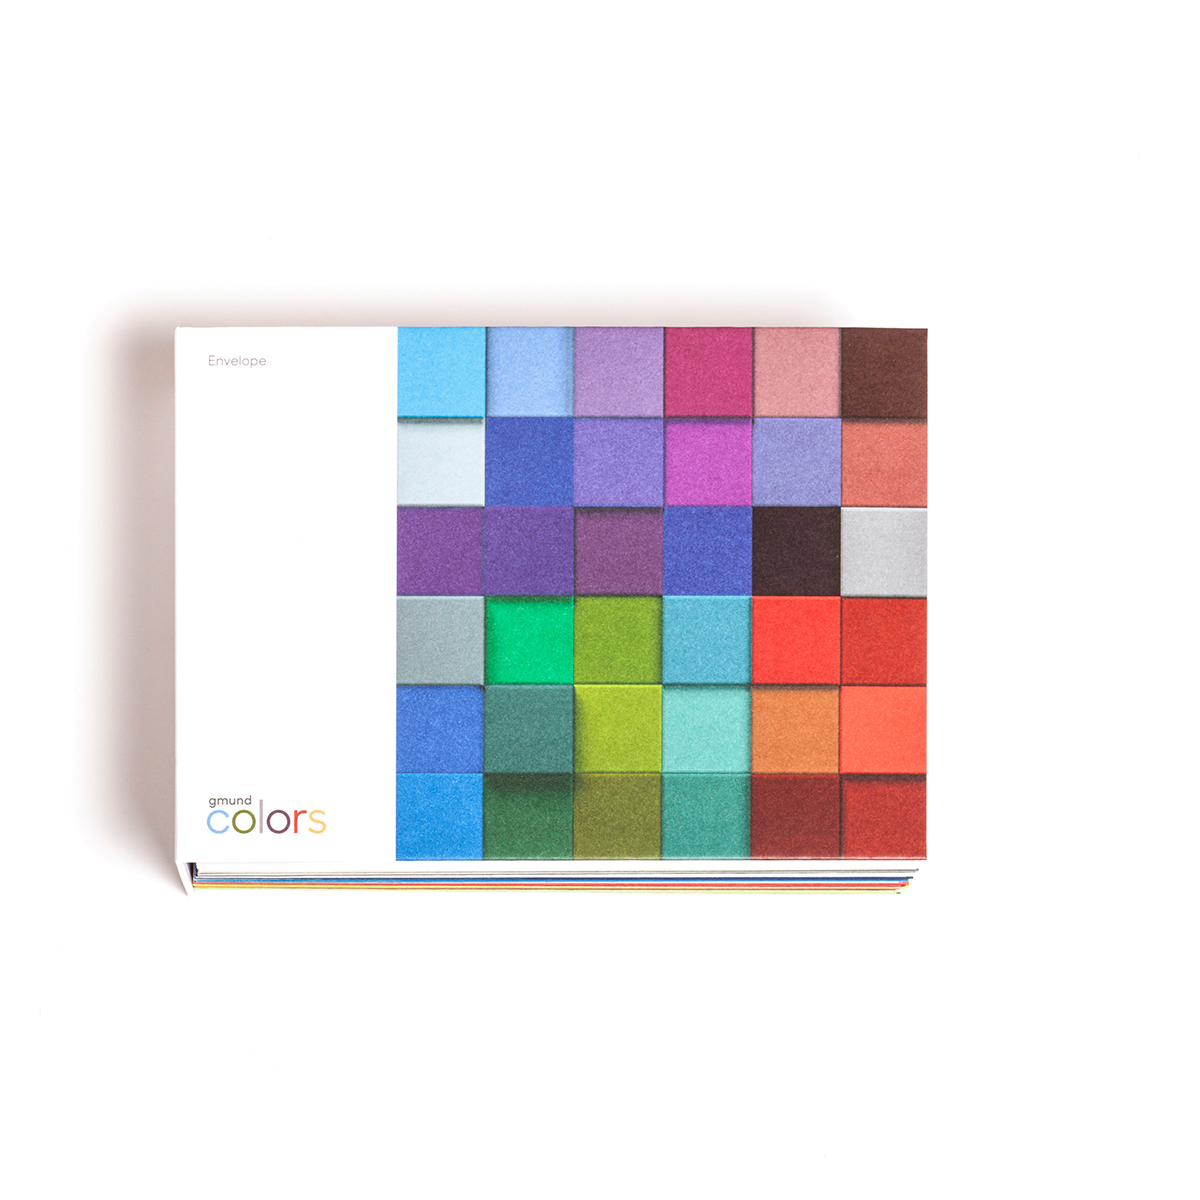 Gmund Colors Matt - Gmund Colors Envelope